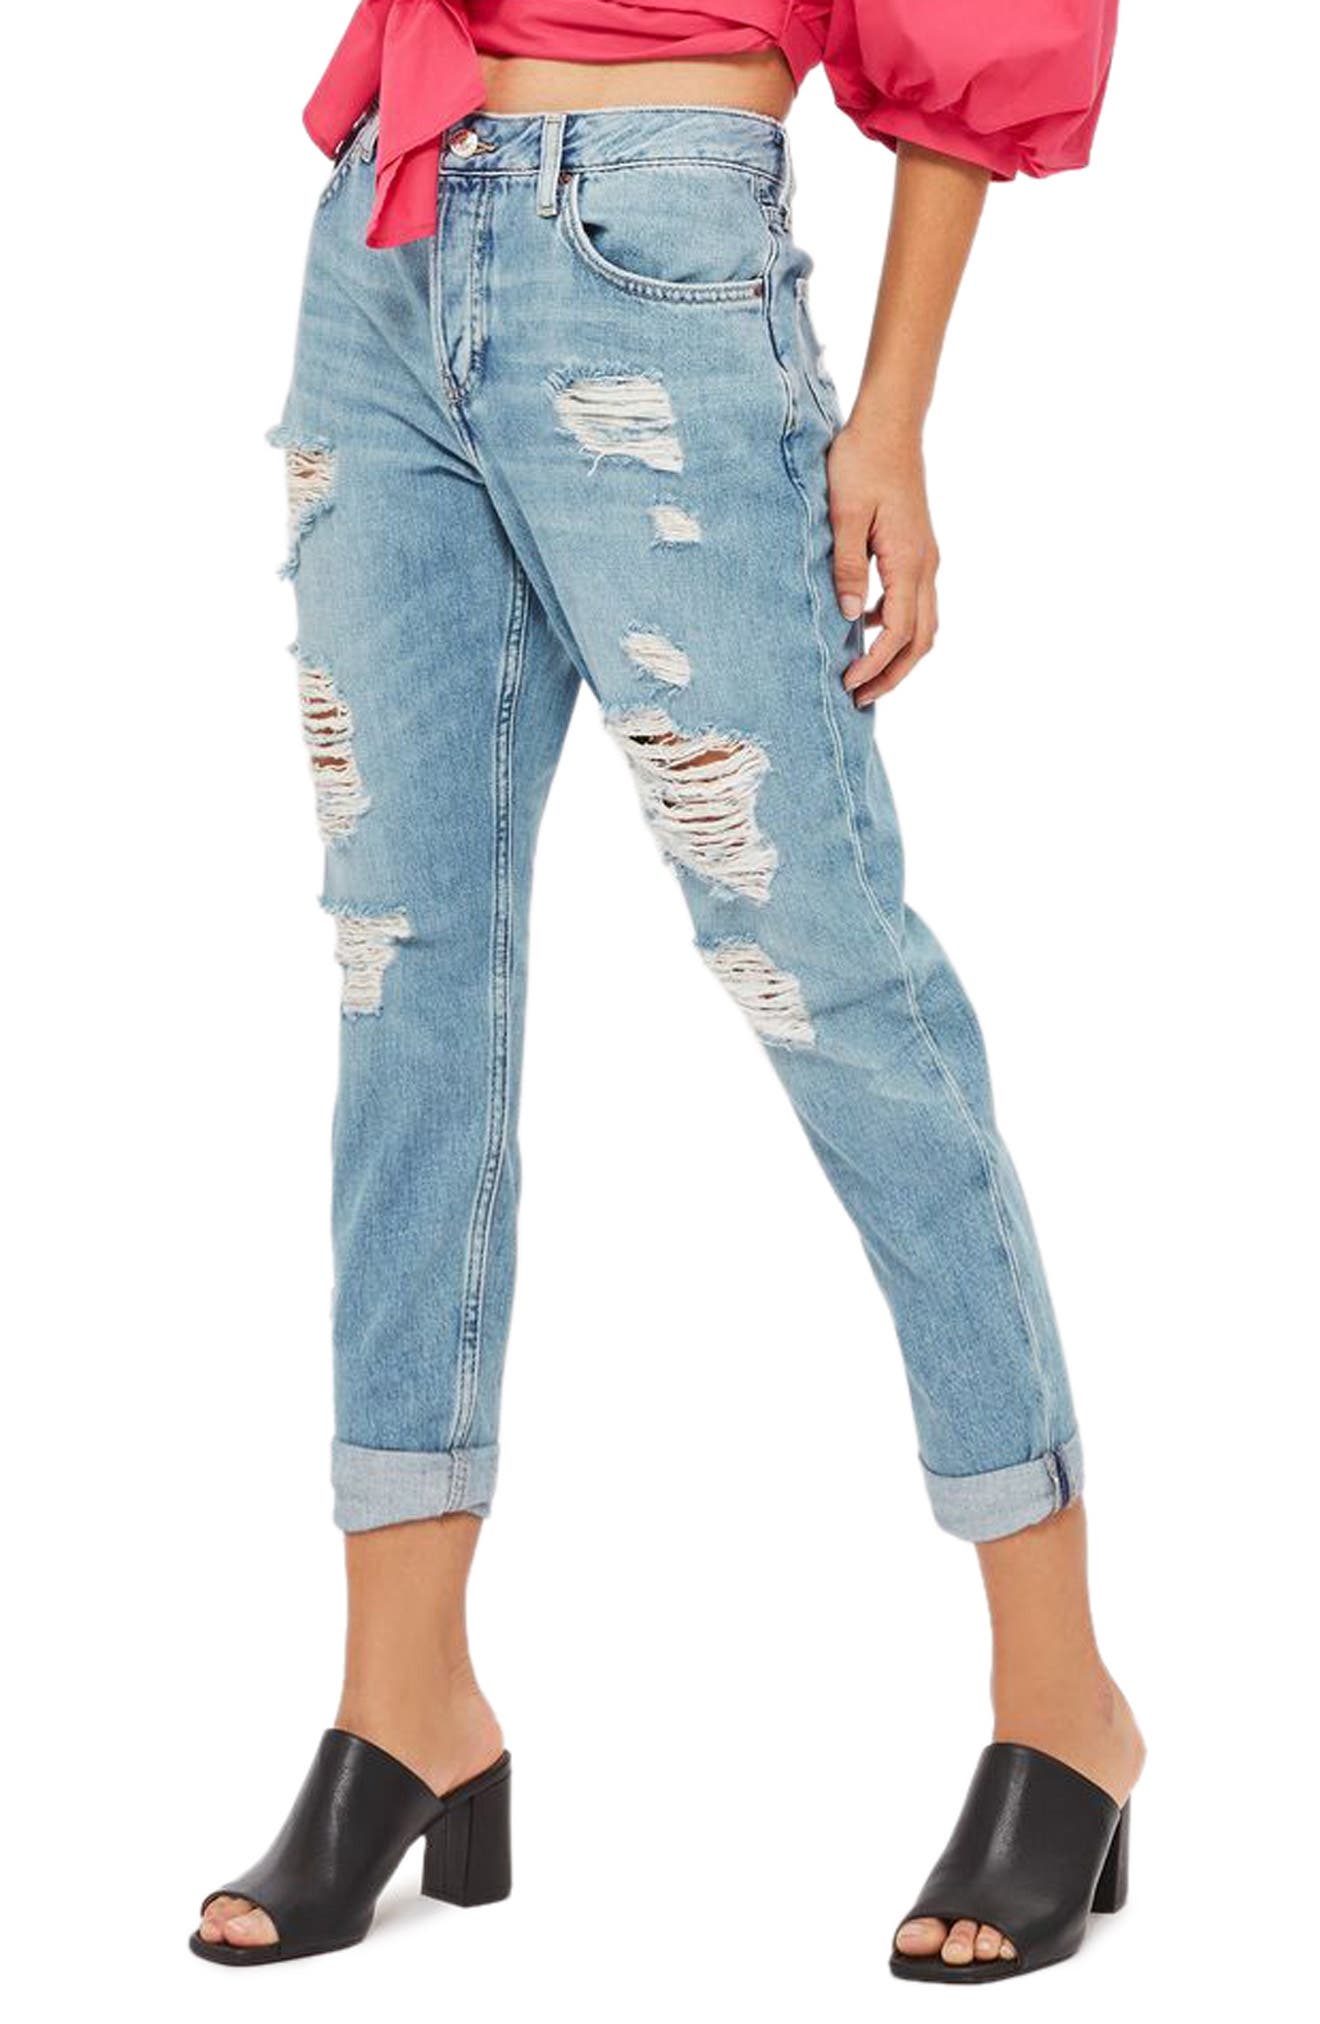 hayden jeans topshop